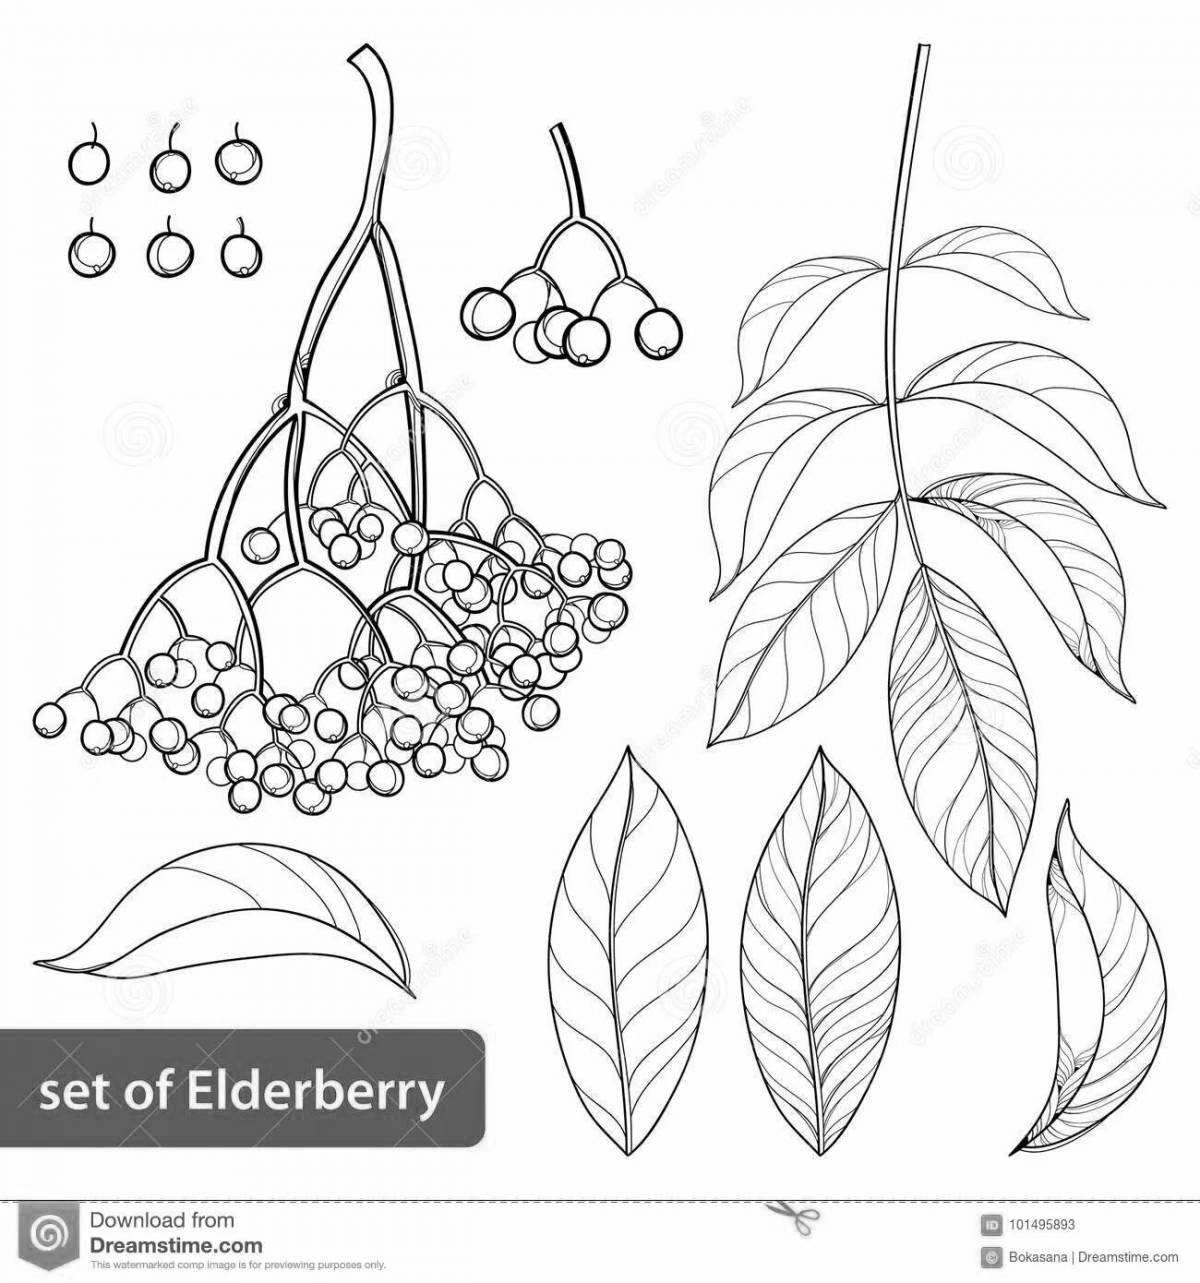 Red elderberry #4